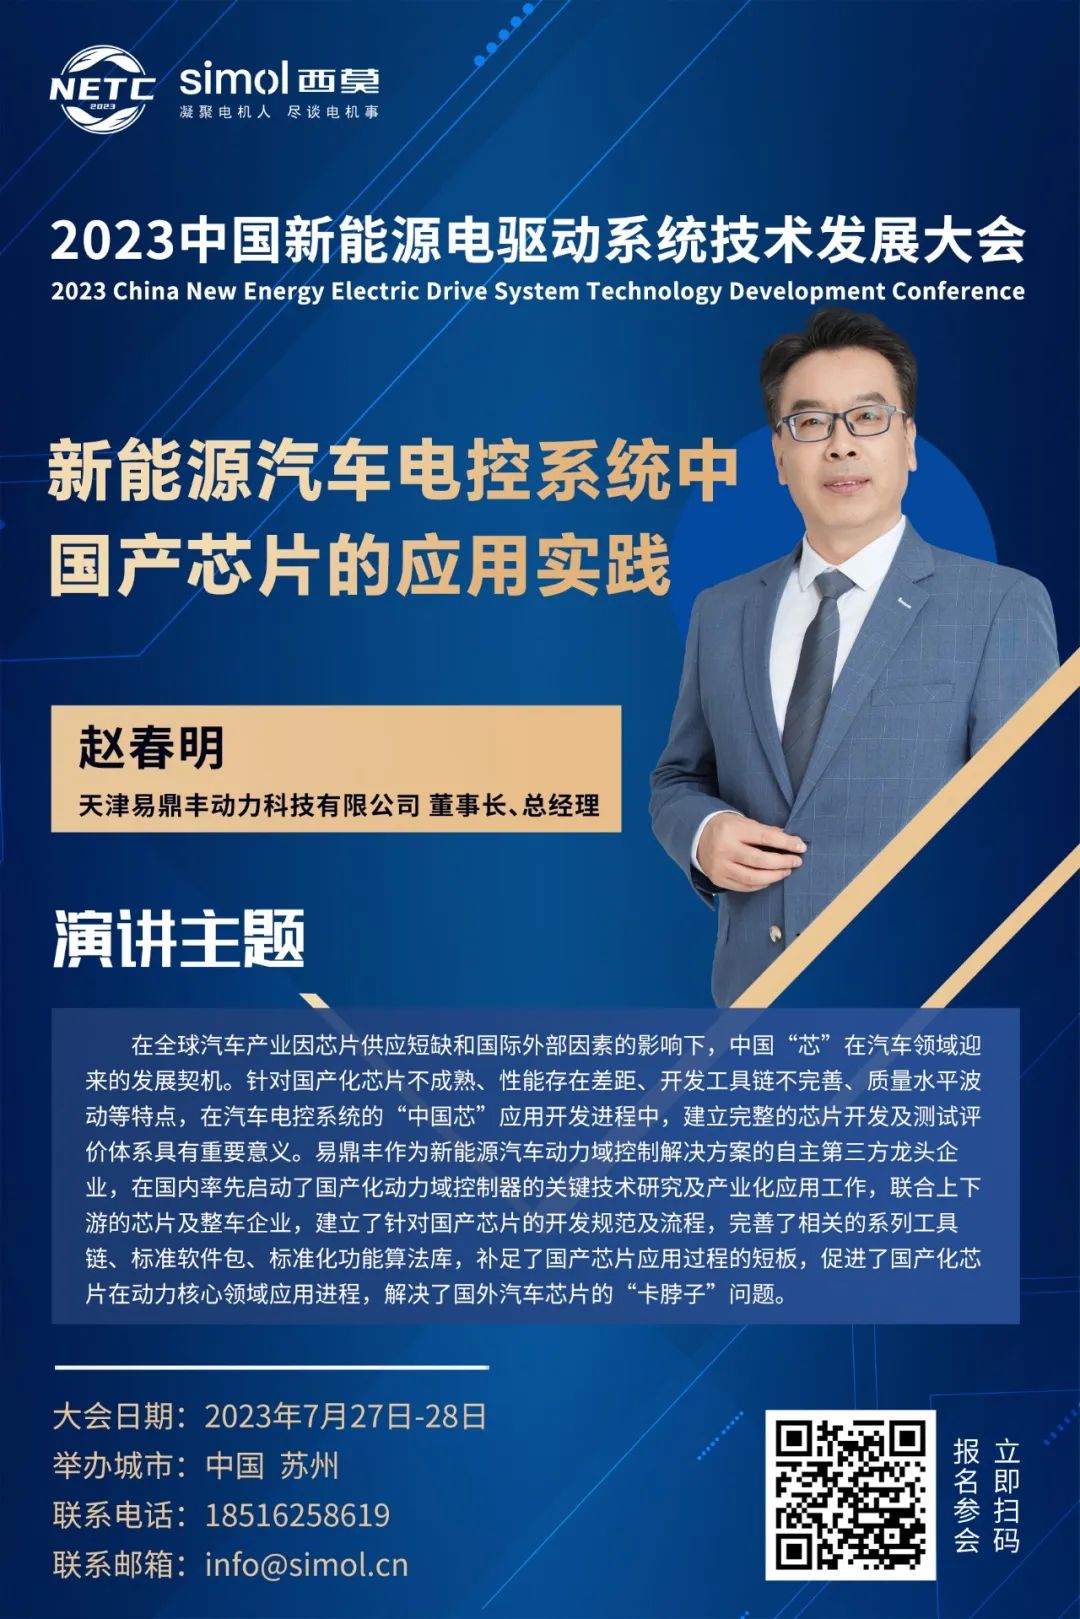 2023中国新能源电驱动系统技术发展大会演讲嘉宾介绍（三）